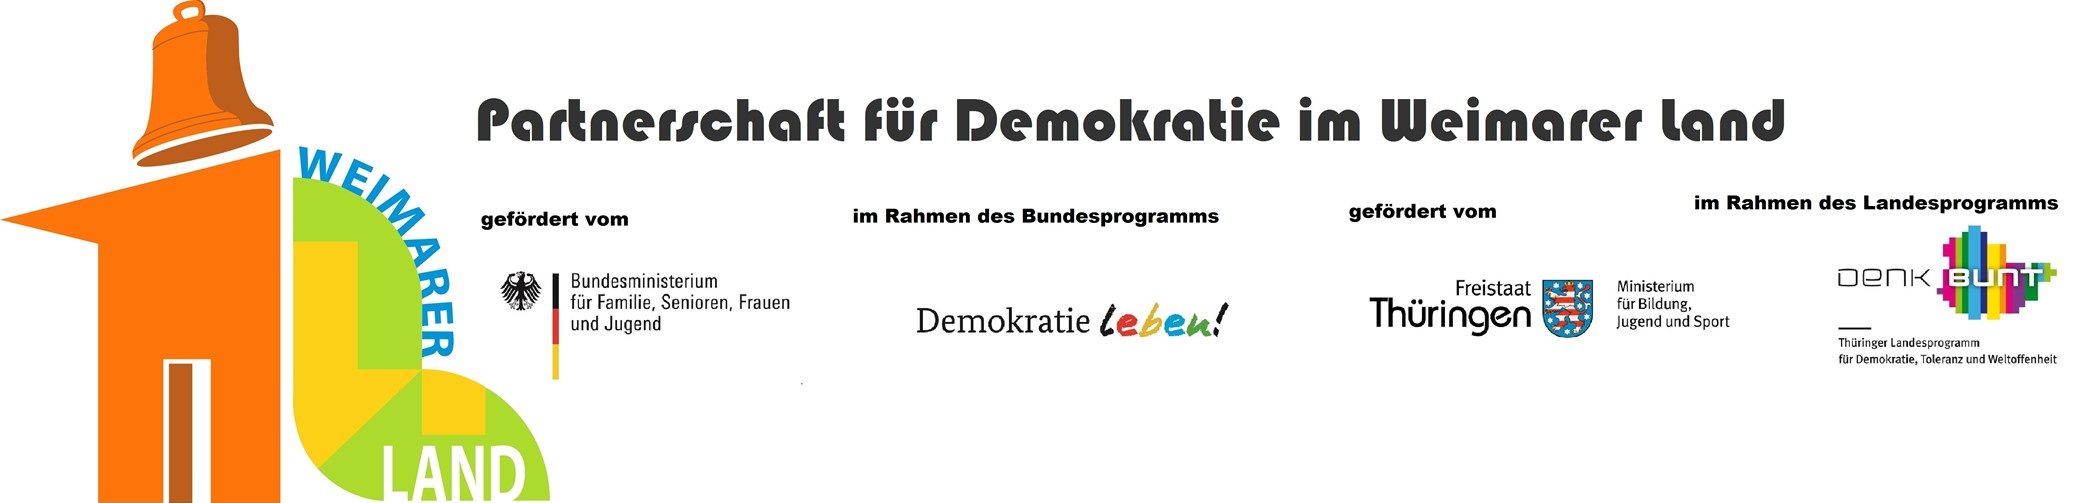 Partnerschaft für Demokratie  Apolda / Weimarer Land